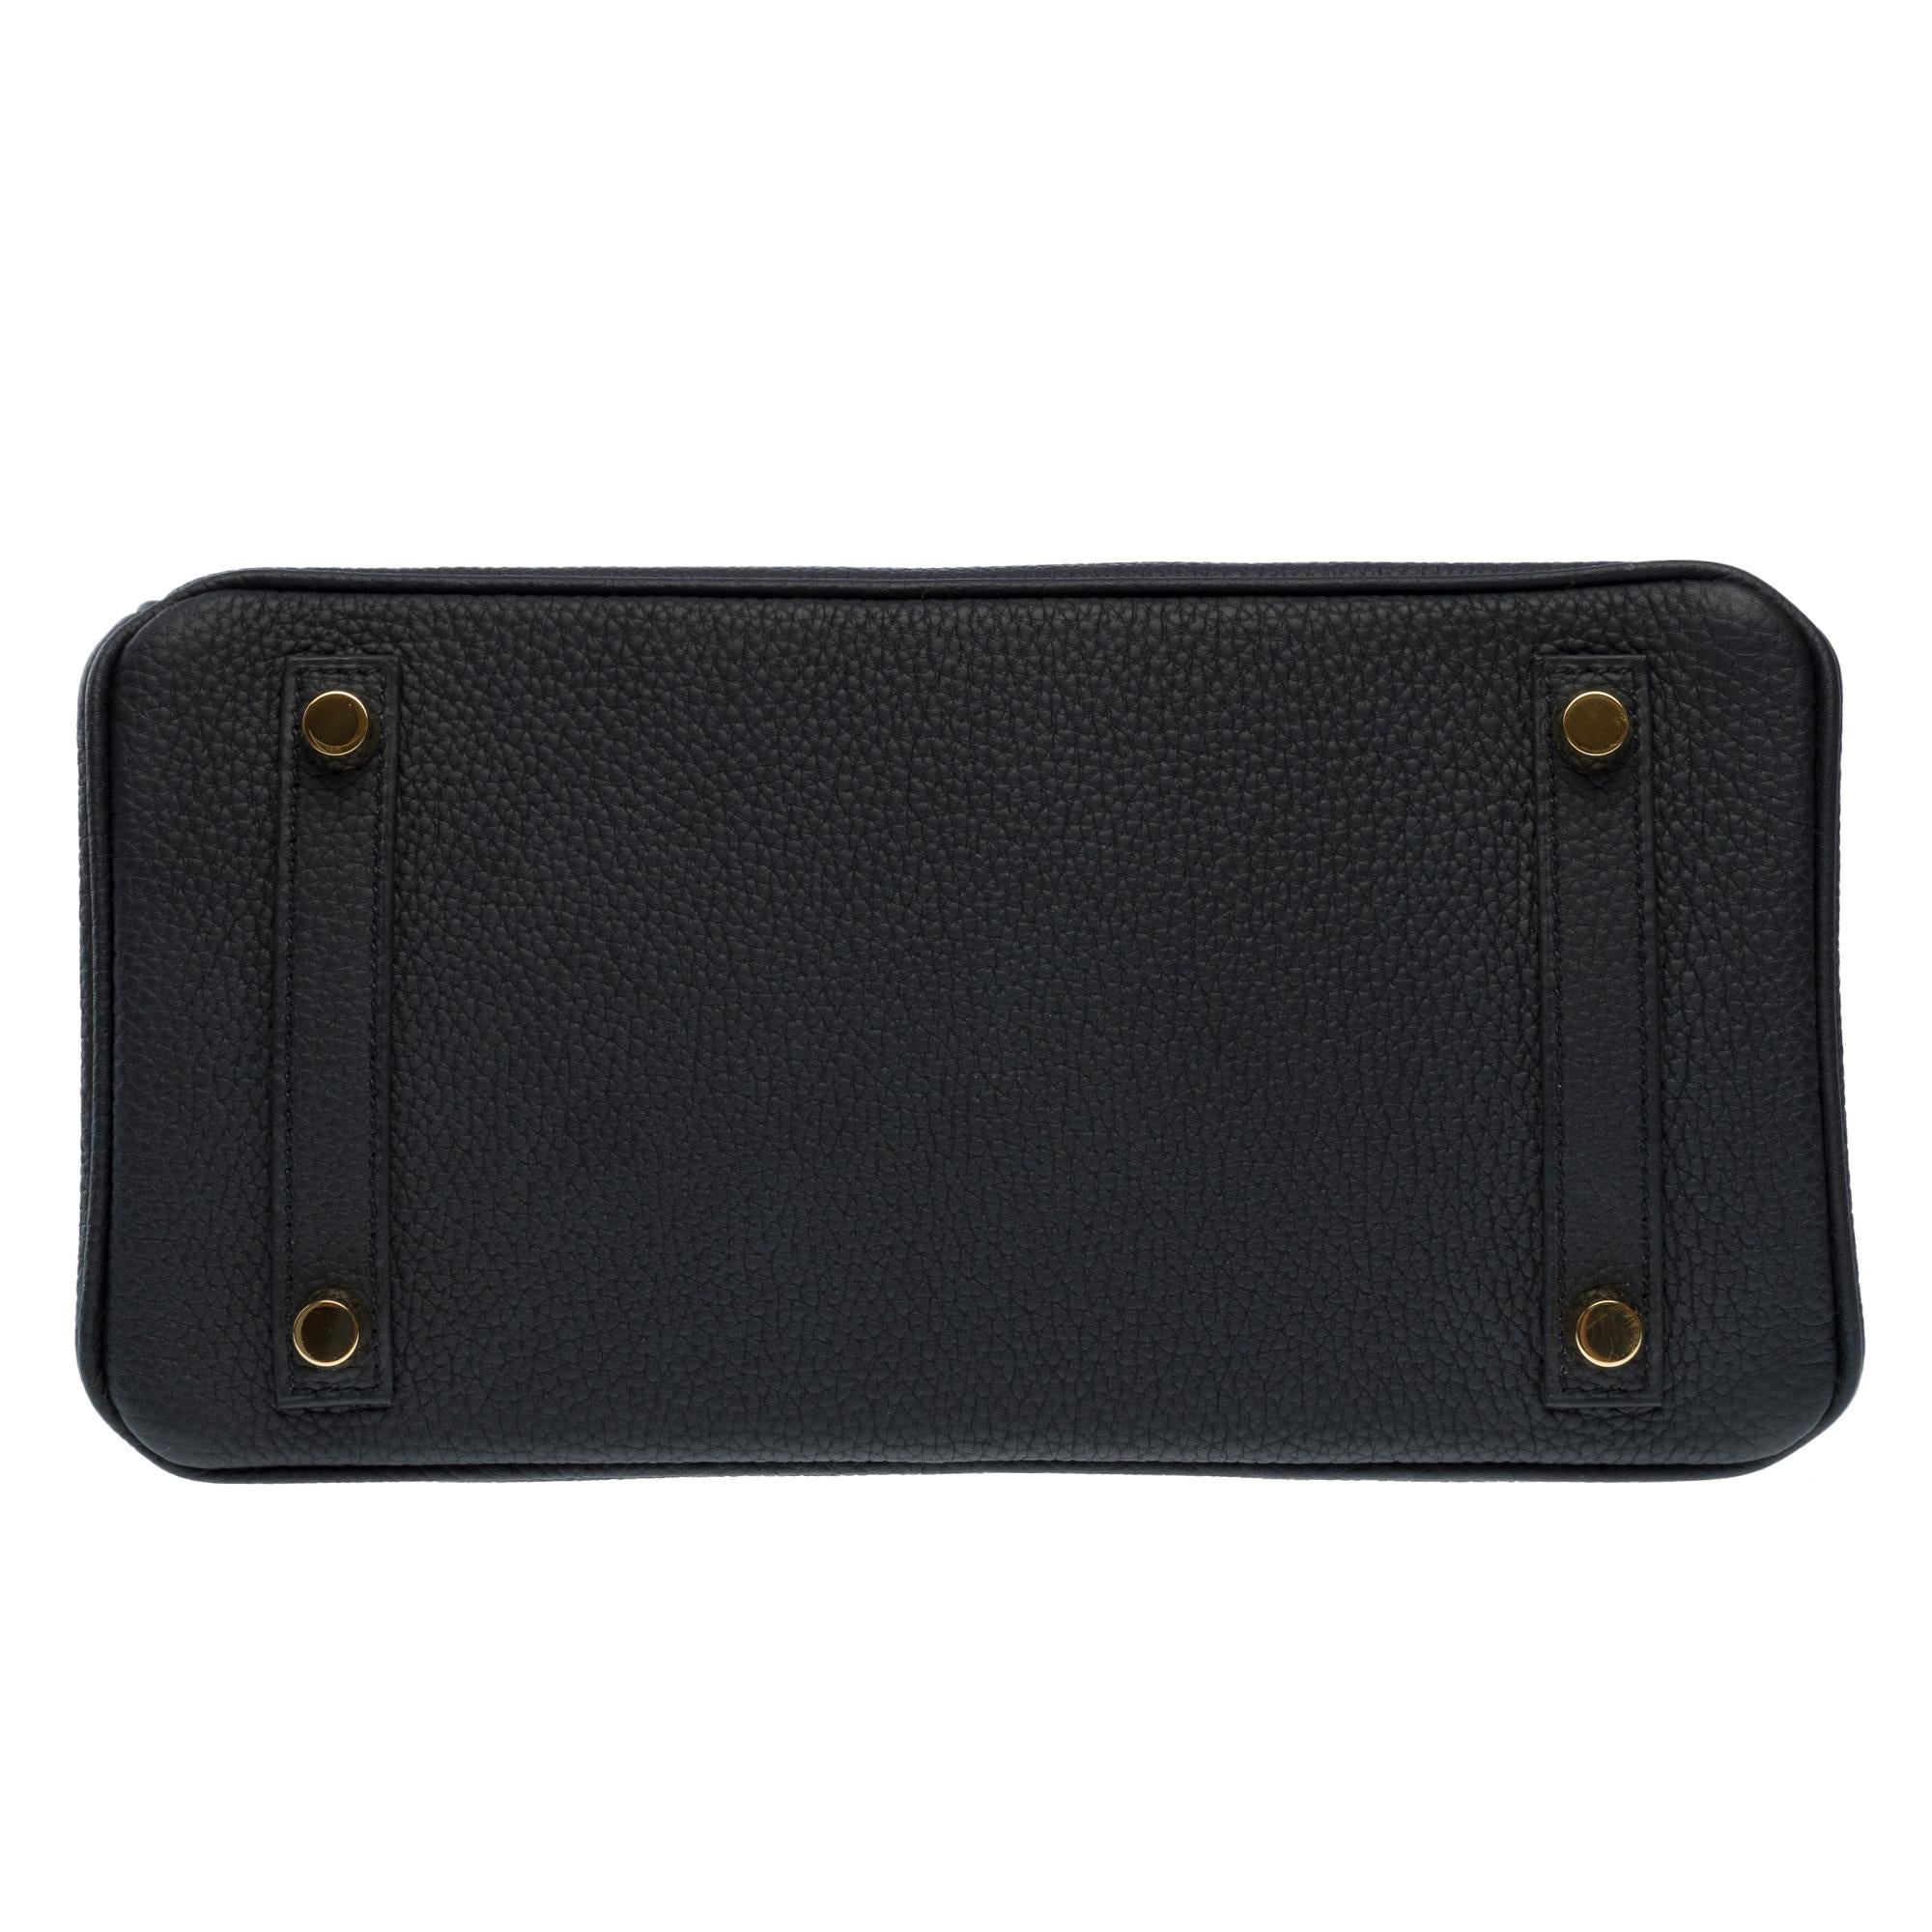 Amazing Hermes Birkin 25 handbag inBlack Togo leather, GHW For Sale 7